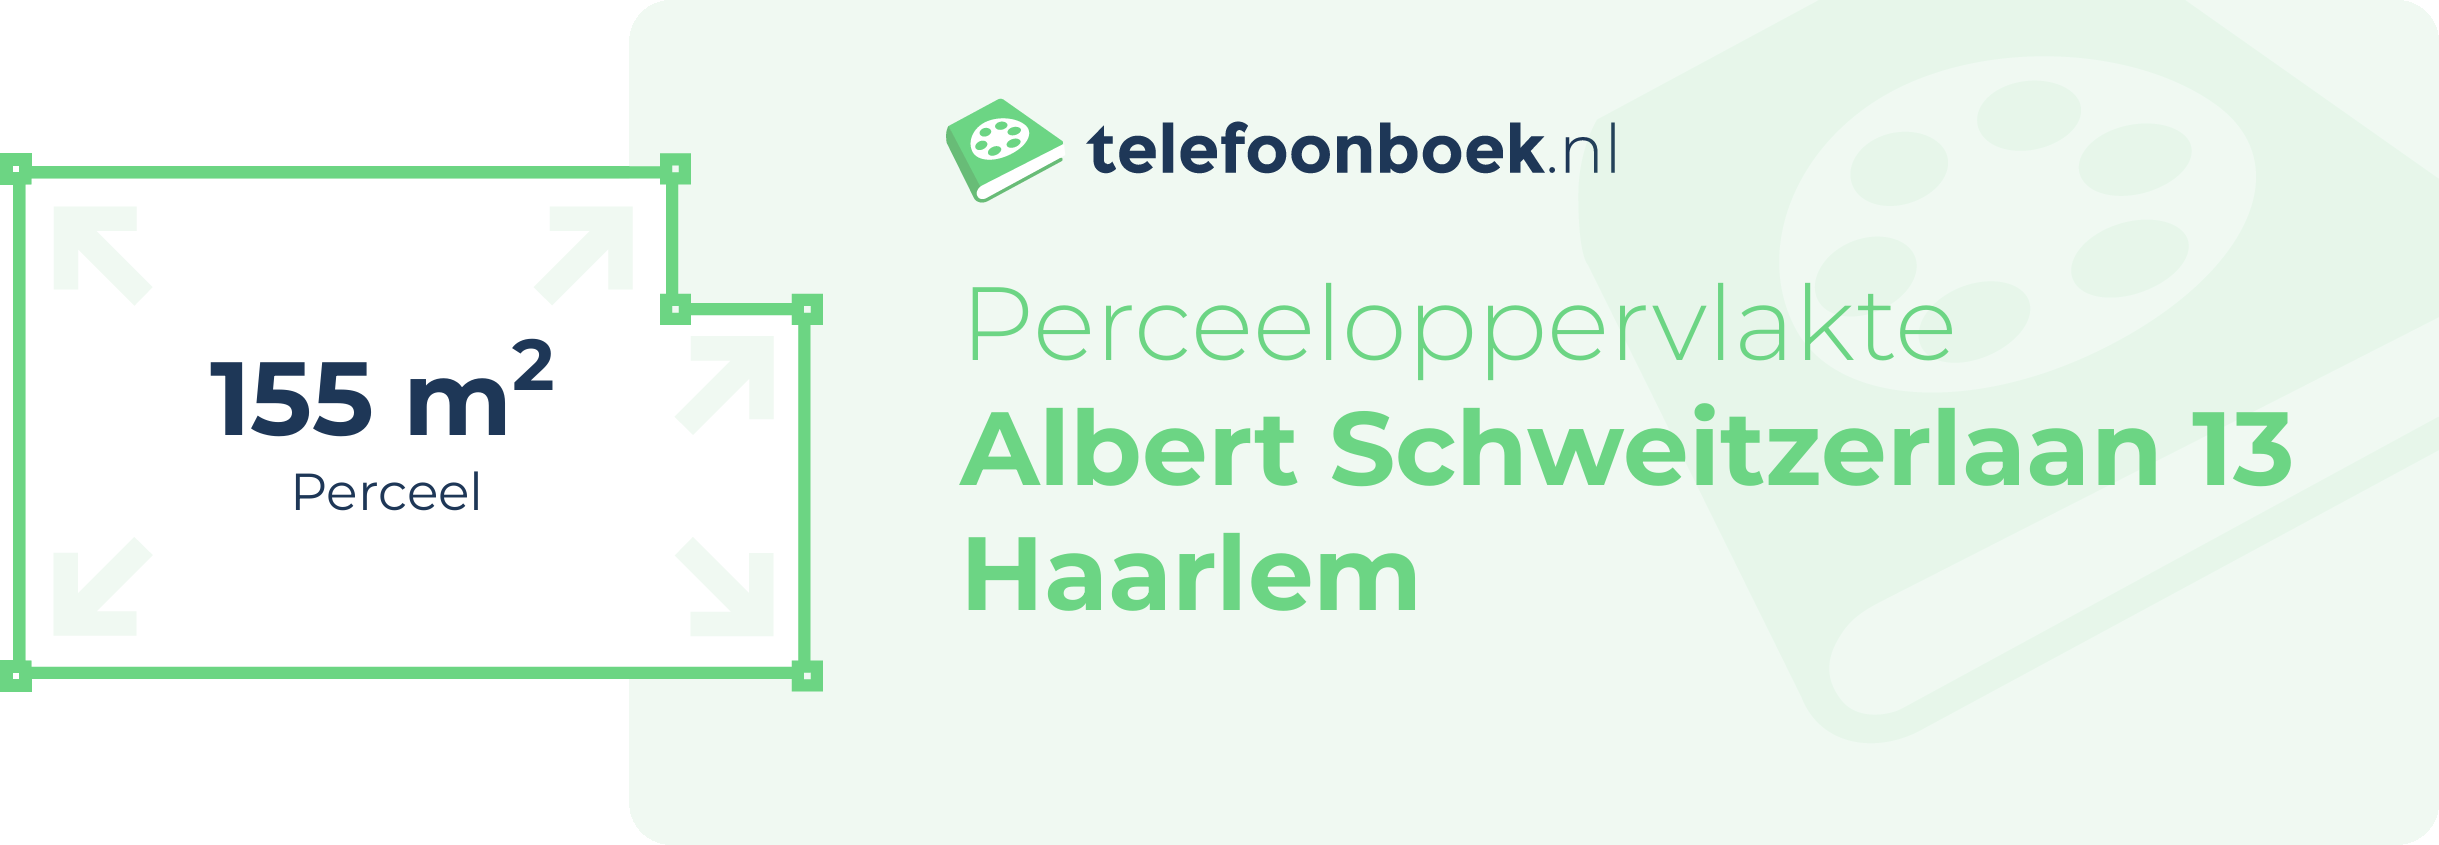 Perceeloppervlakte Albert Schweitzerlaan 13 Haarlem